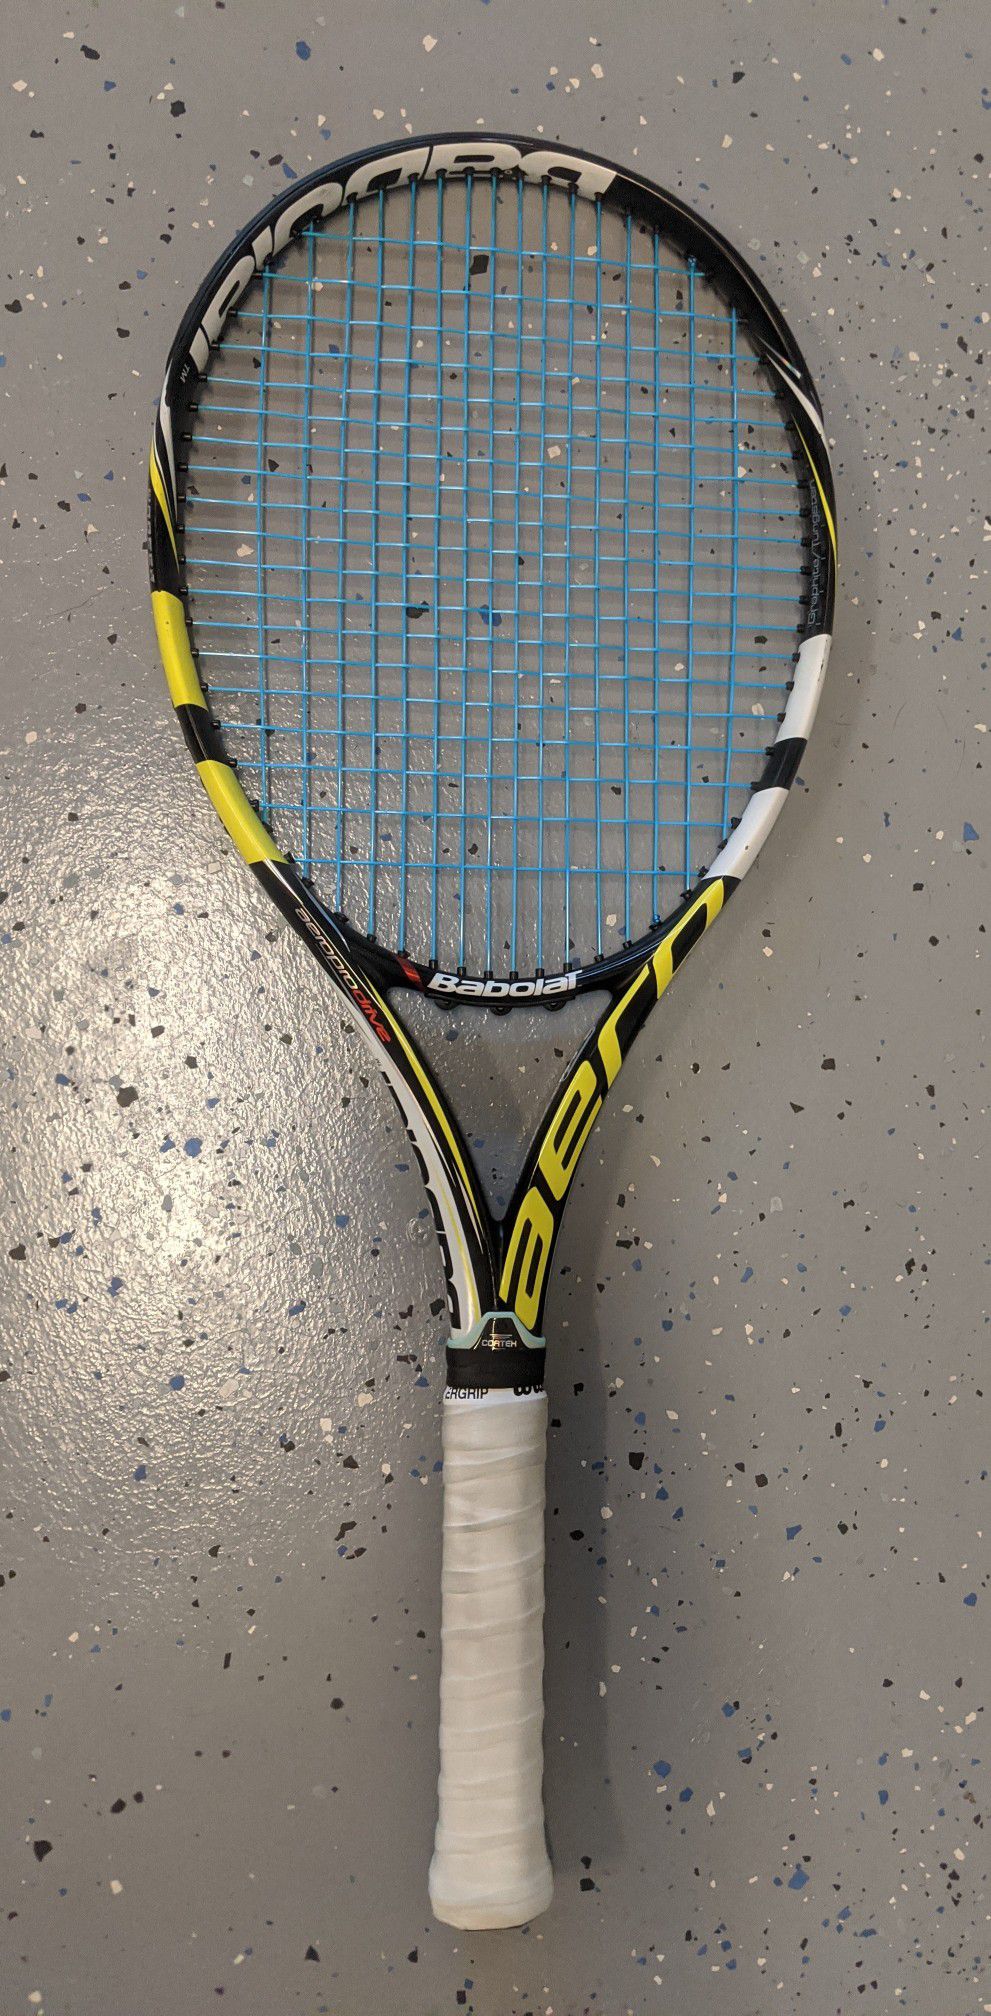 Babolat Pure Aero tennis racket / racquet